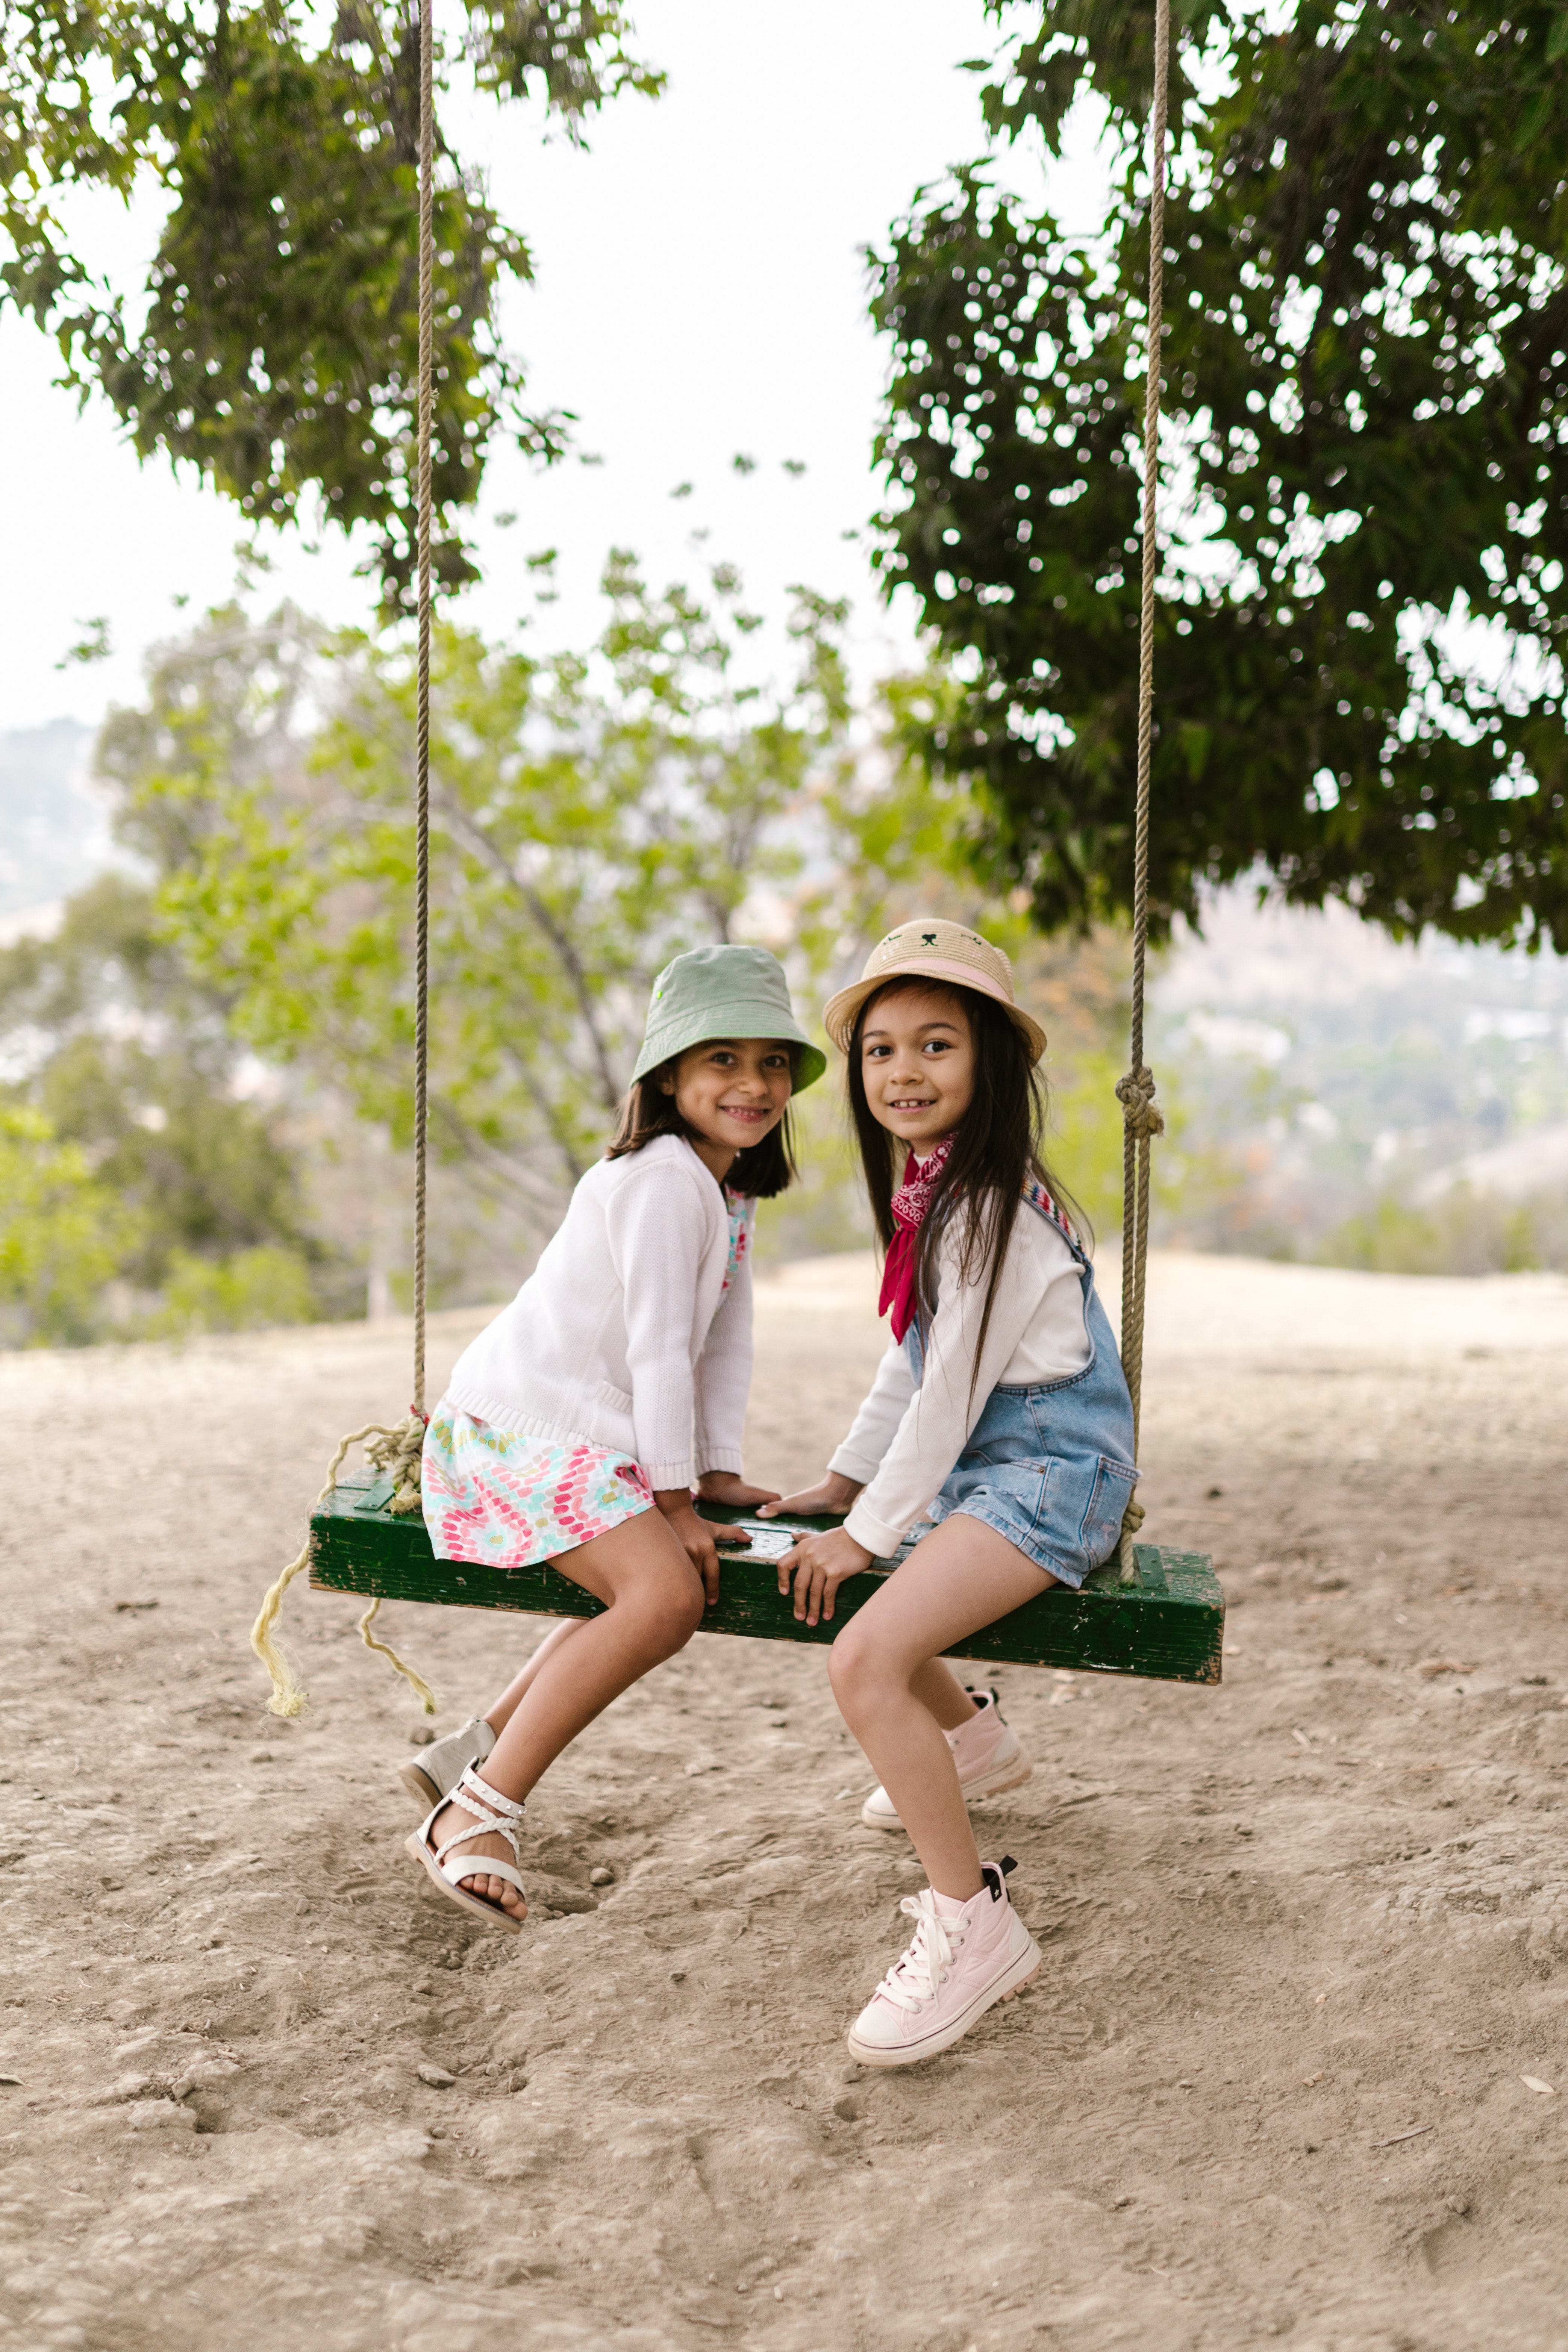 Deux filles partageant une balançoire | Source : Pexels